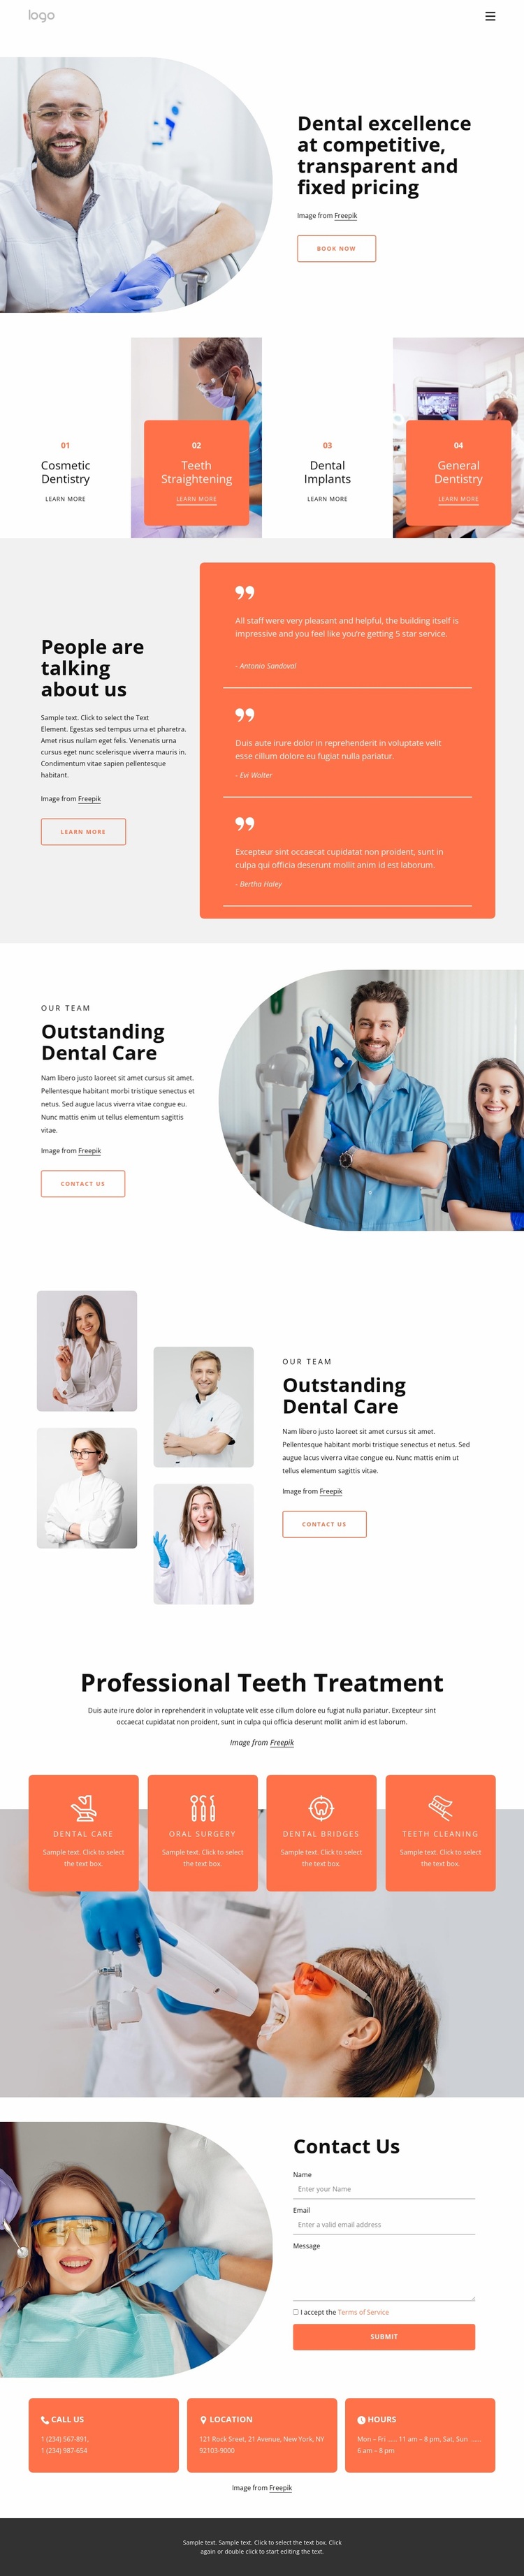 Dental excellence Website Design